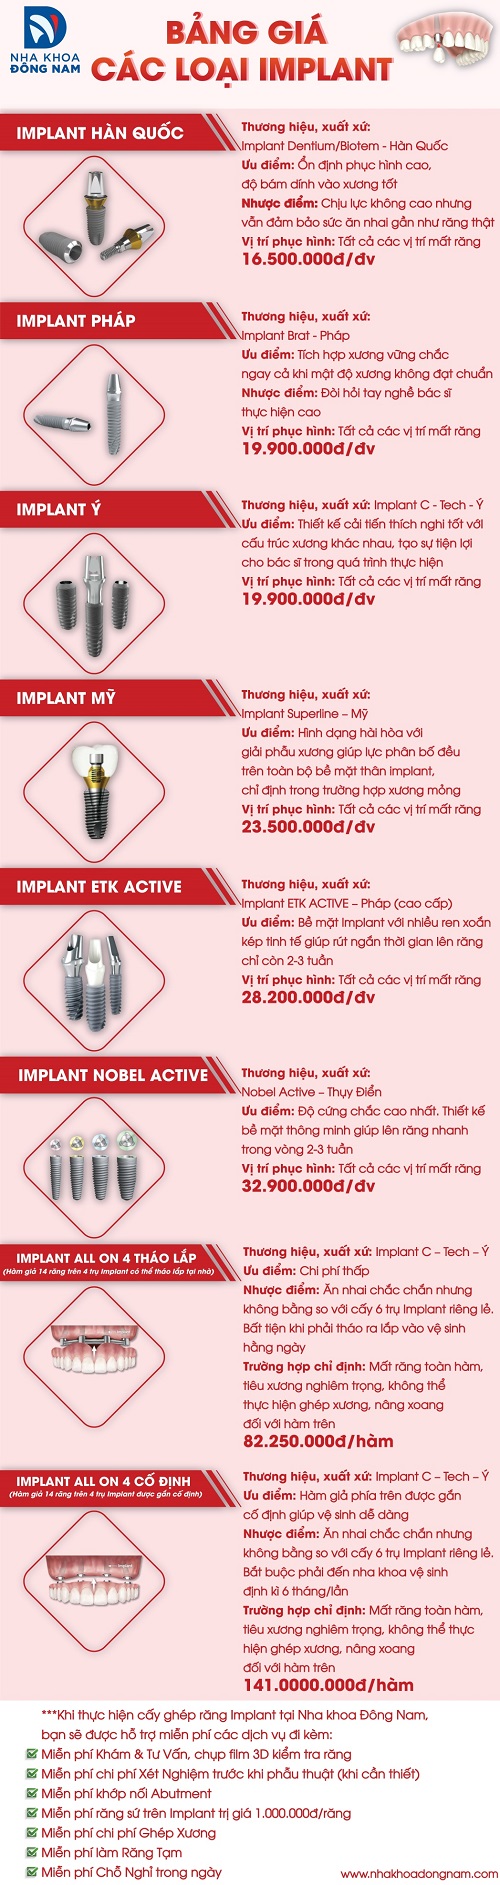 Bảng giá các loại Implant tại Nha Khoa Đông Nam